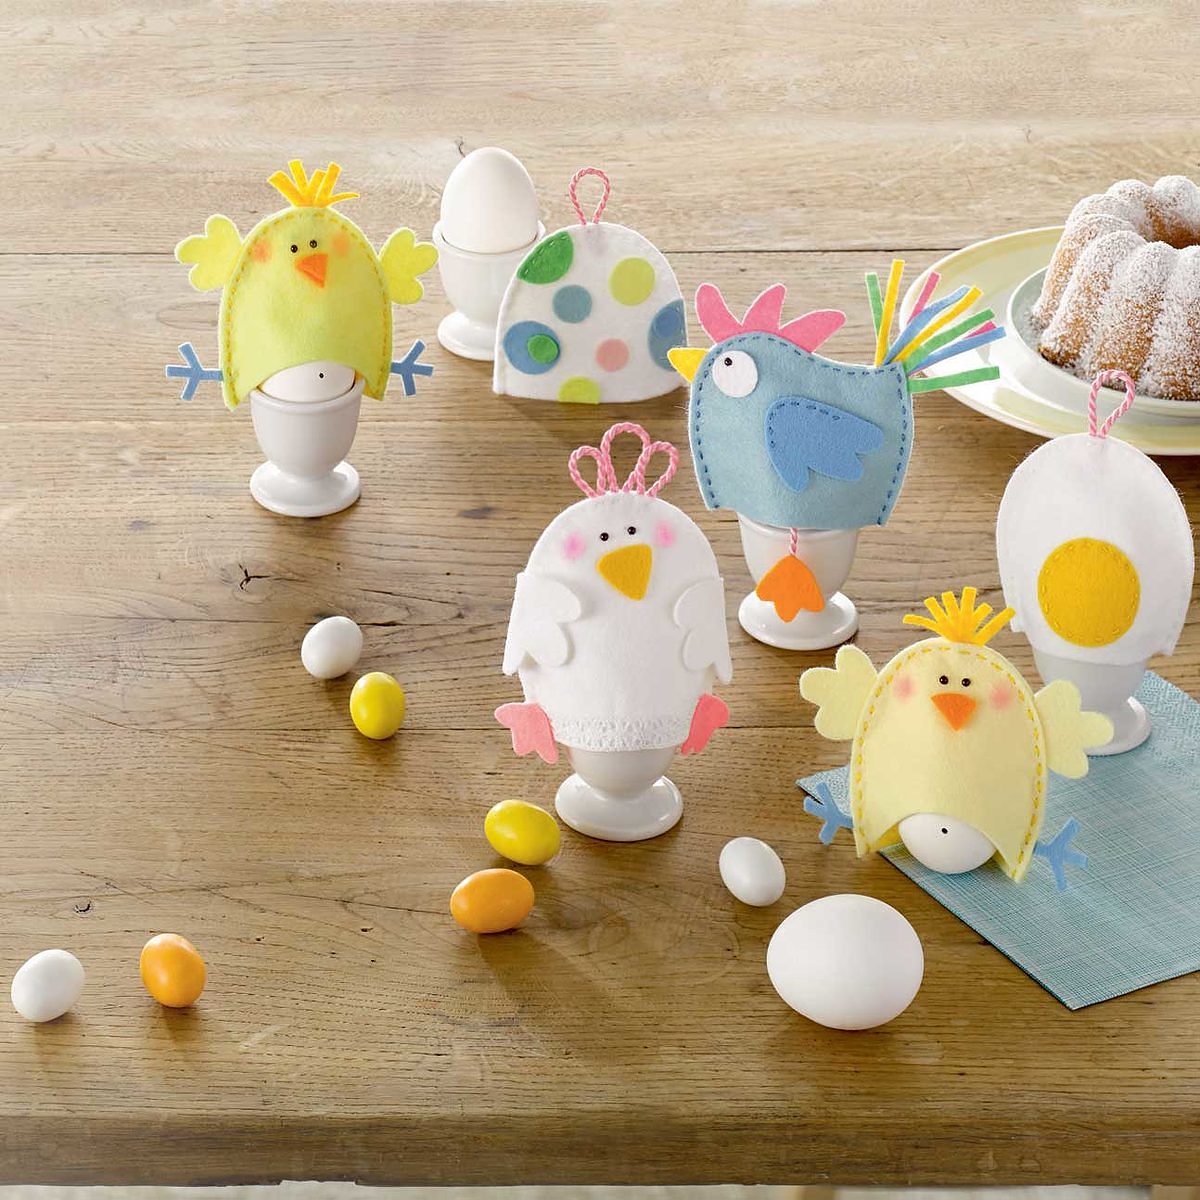 Fêter Pâques avec vos enfants selon leur âge - Blog VTF Vacances